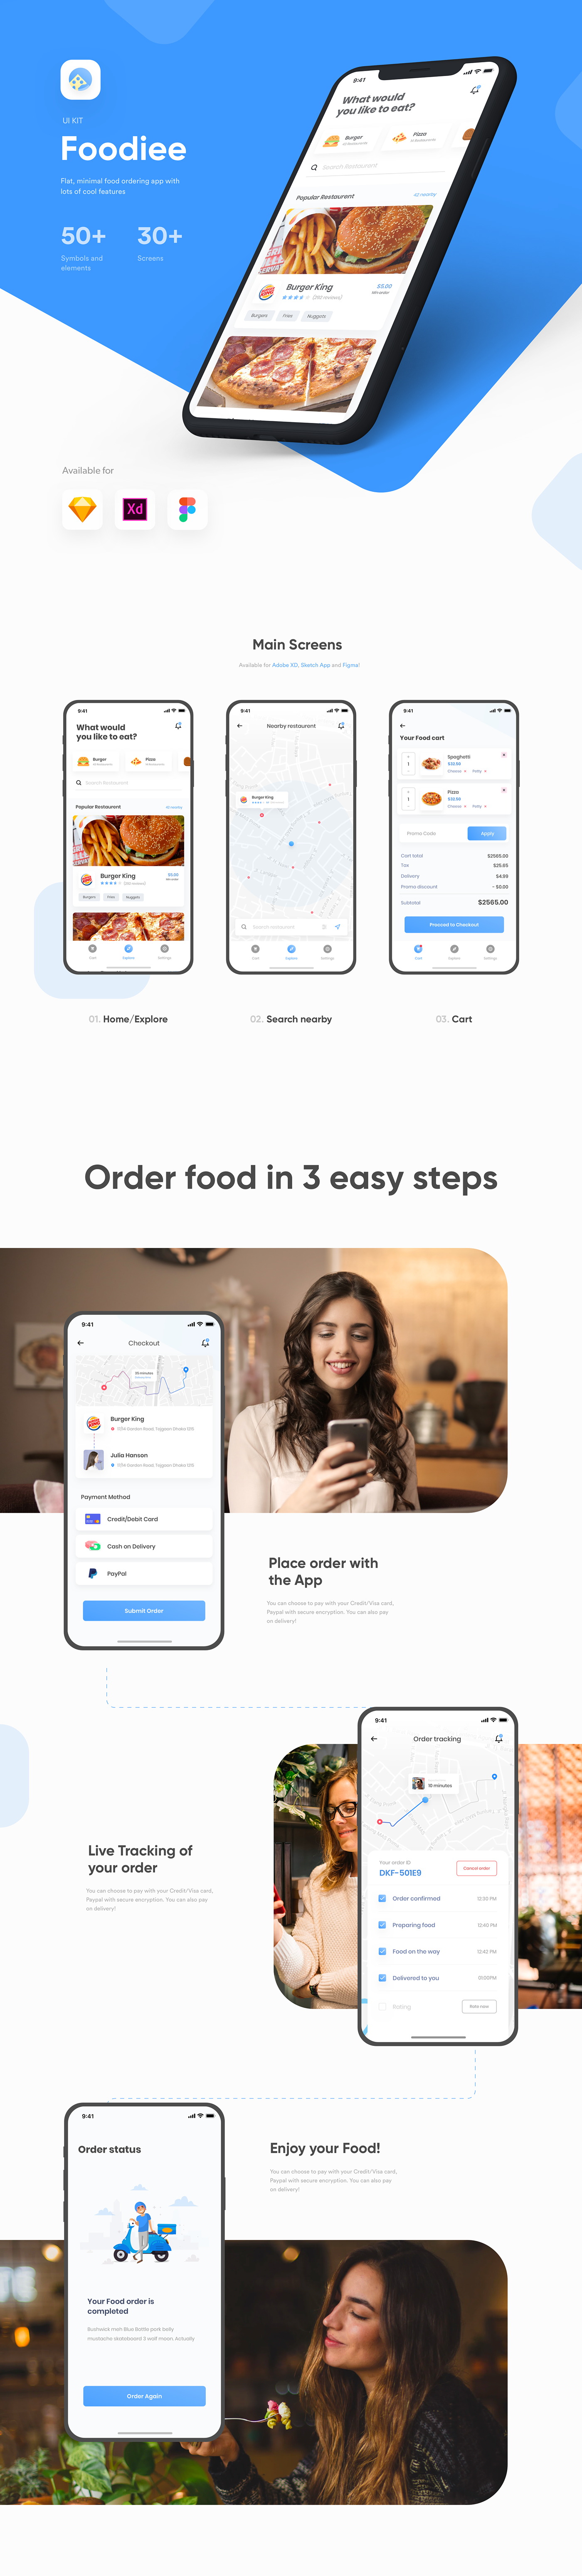 ui kit App UI Kit food app Restaurent app delivery app iPhone x IOS UI kit freebie